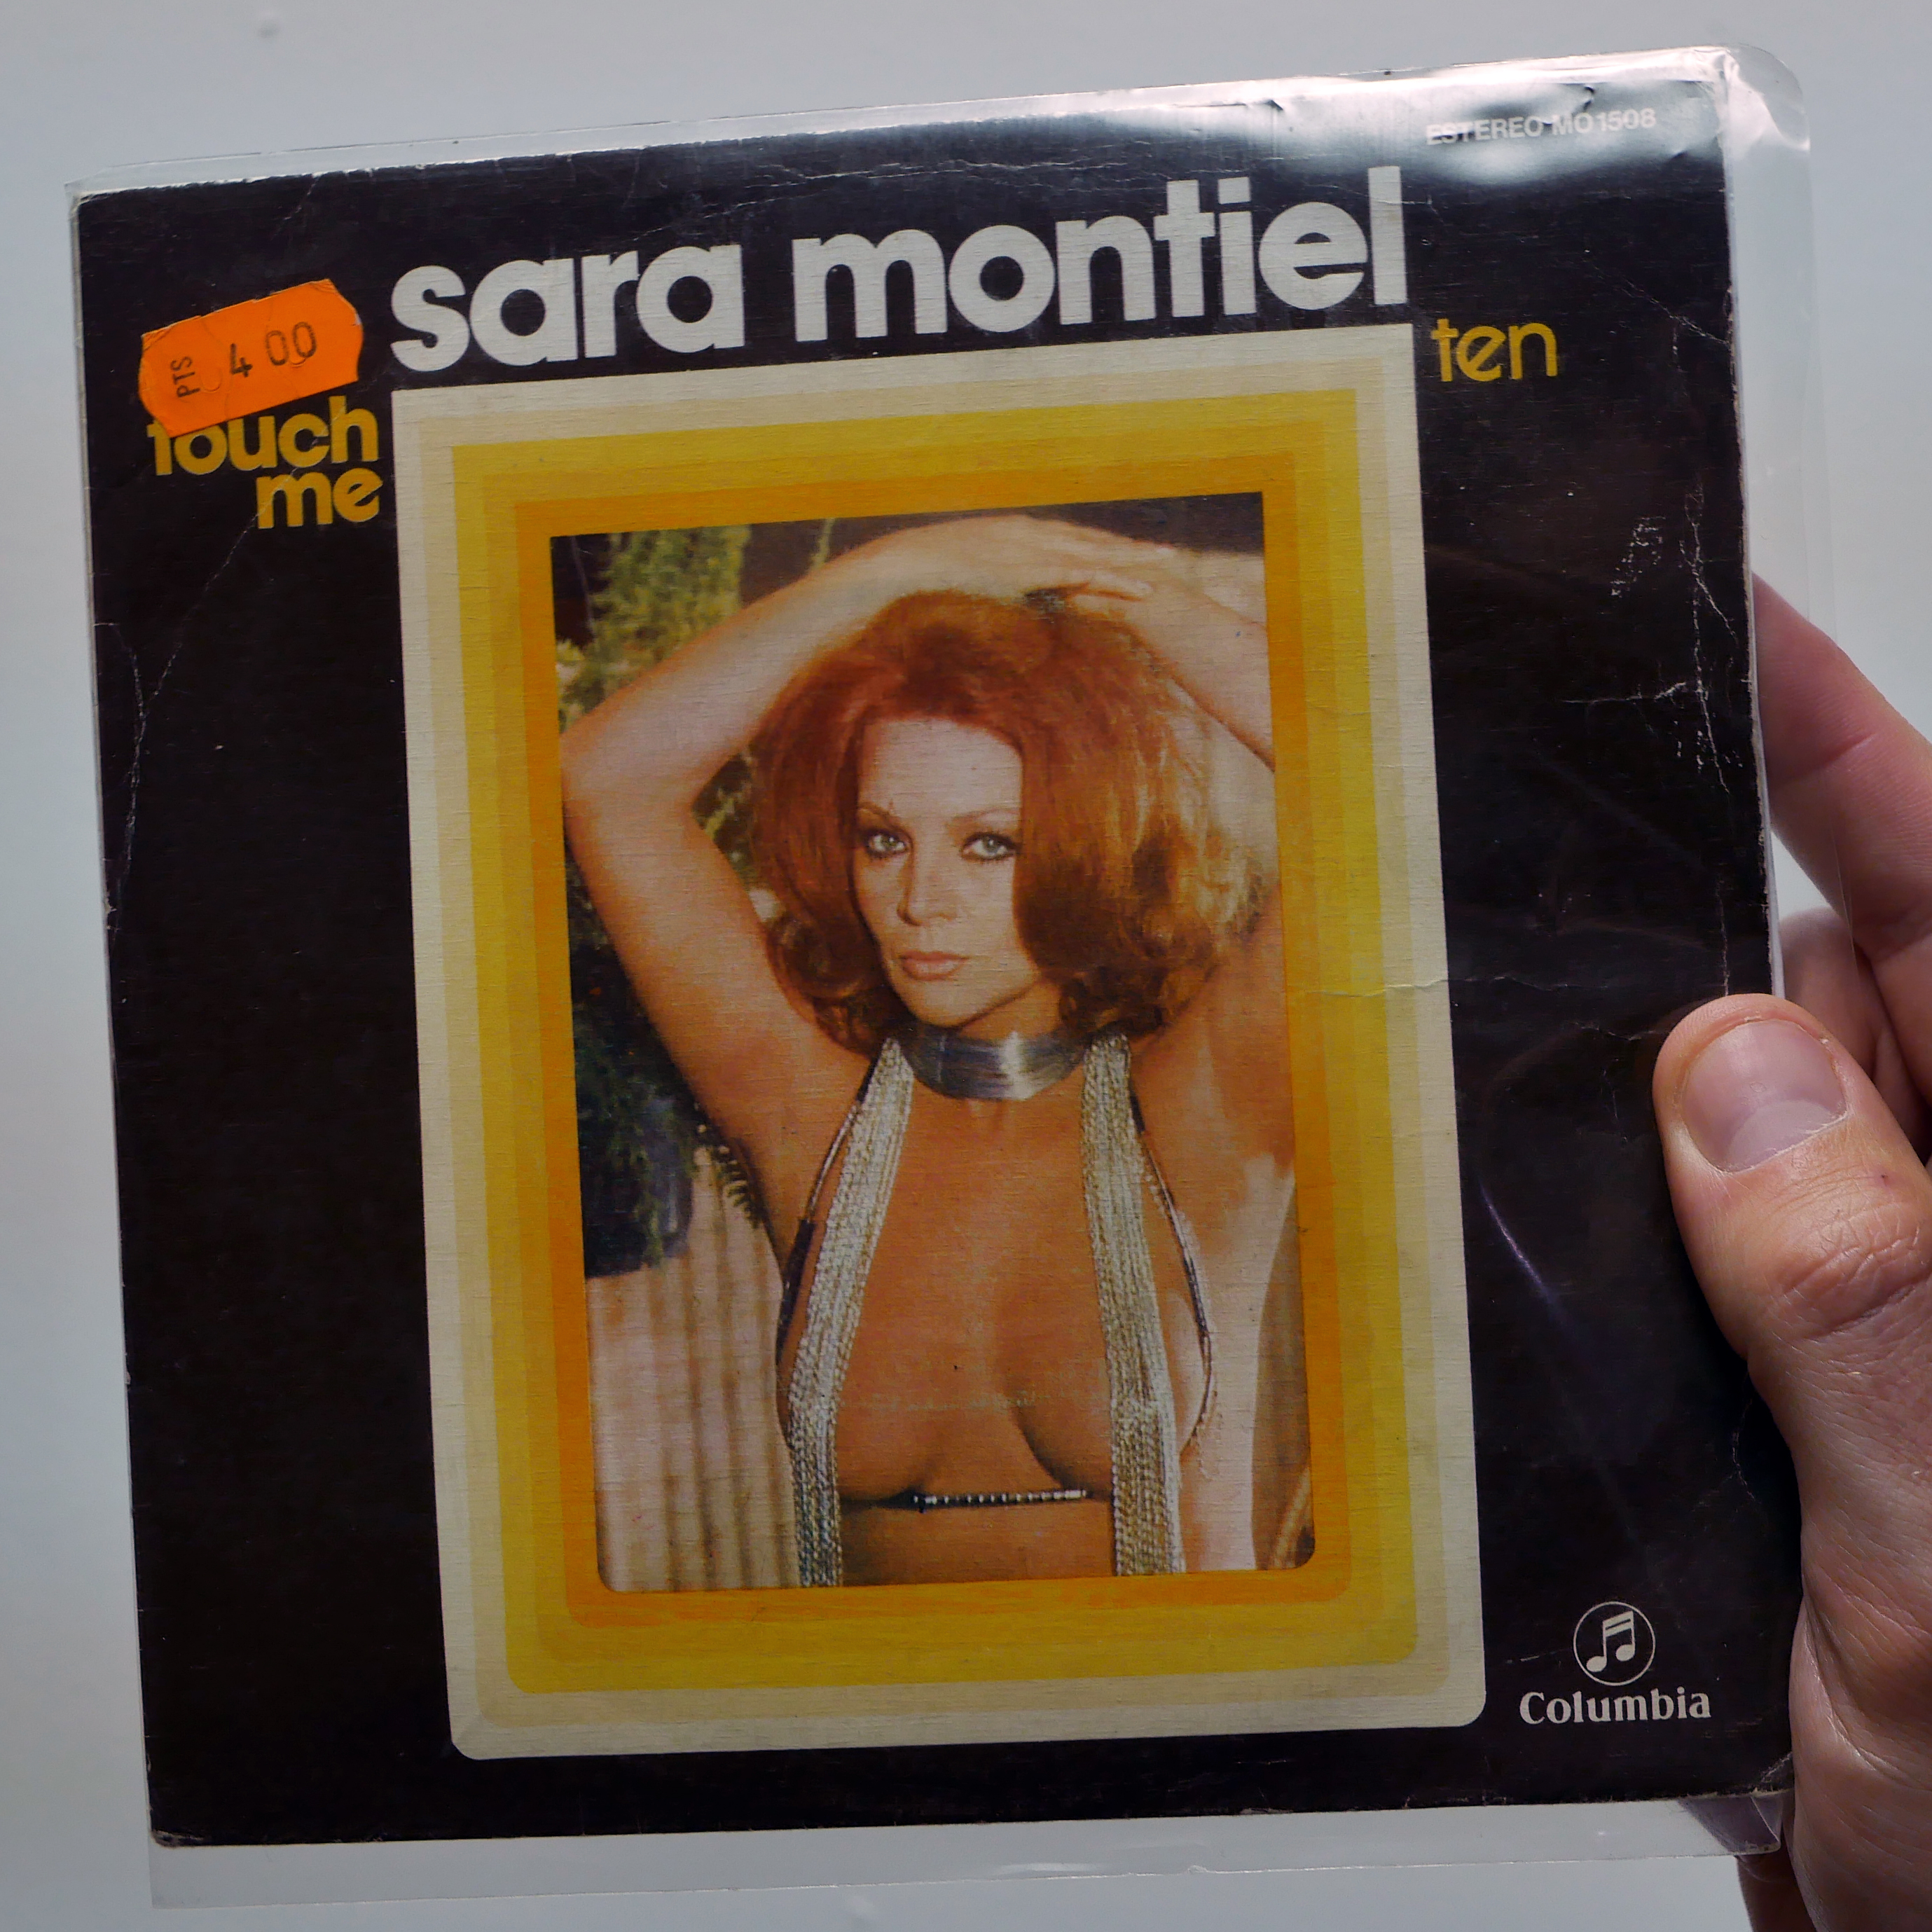 Sara Montiel – Touch Me [7”, 1975]